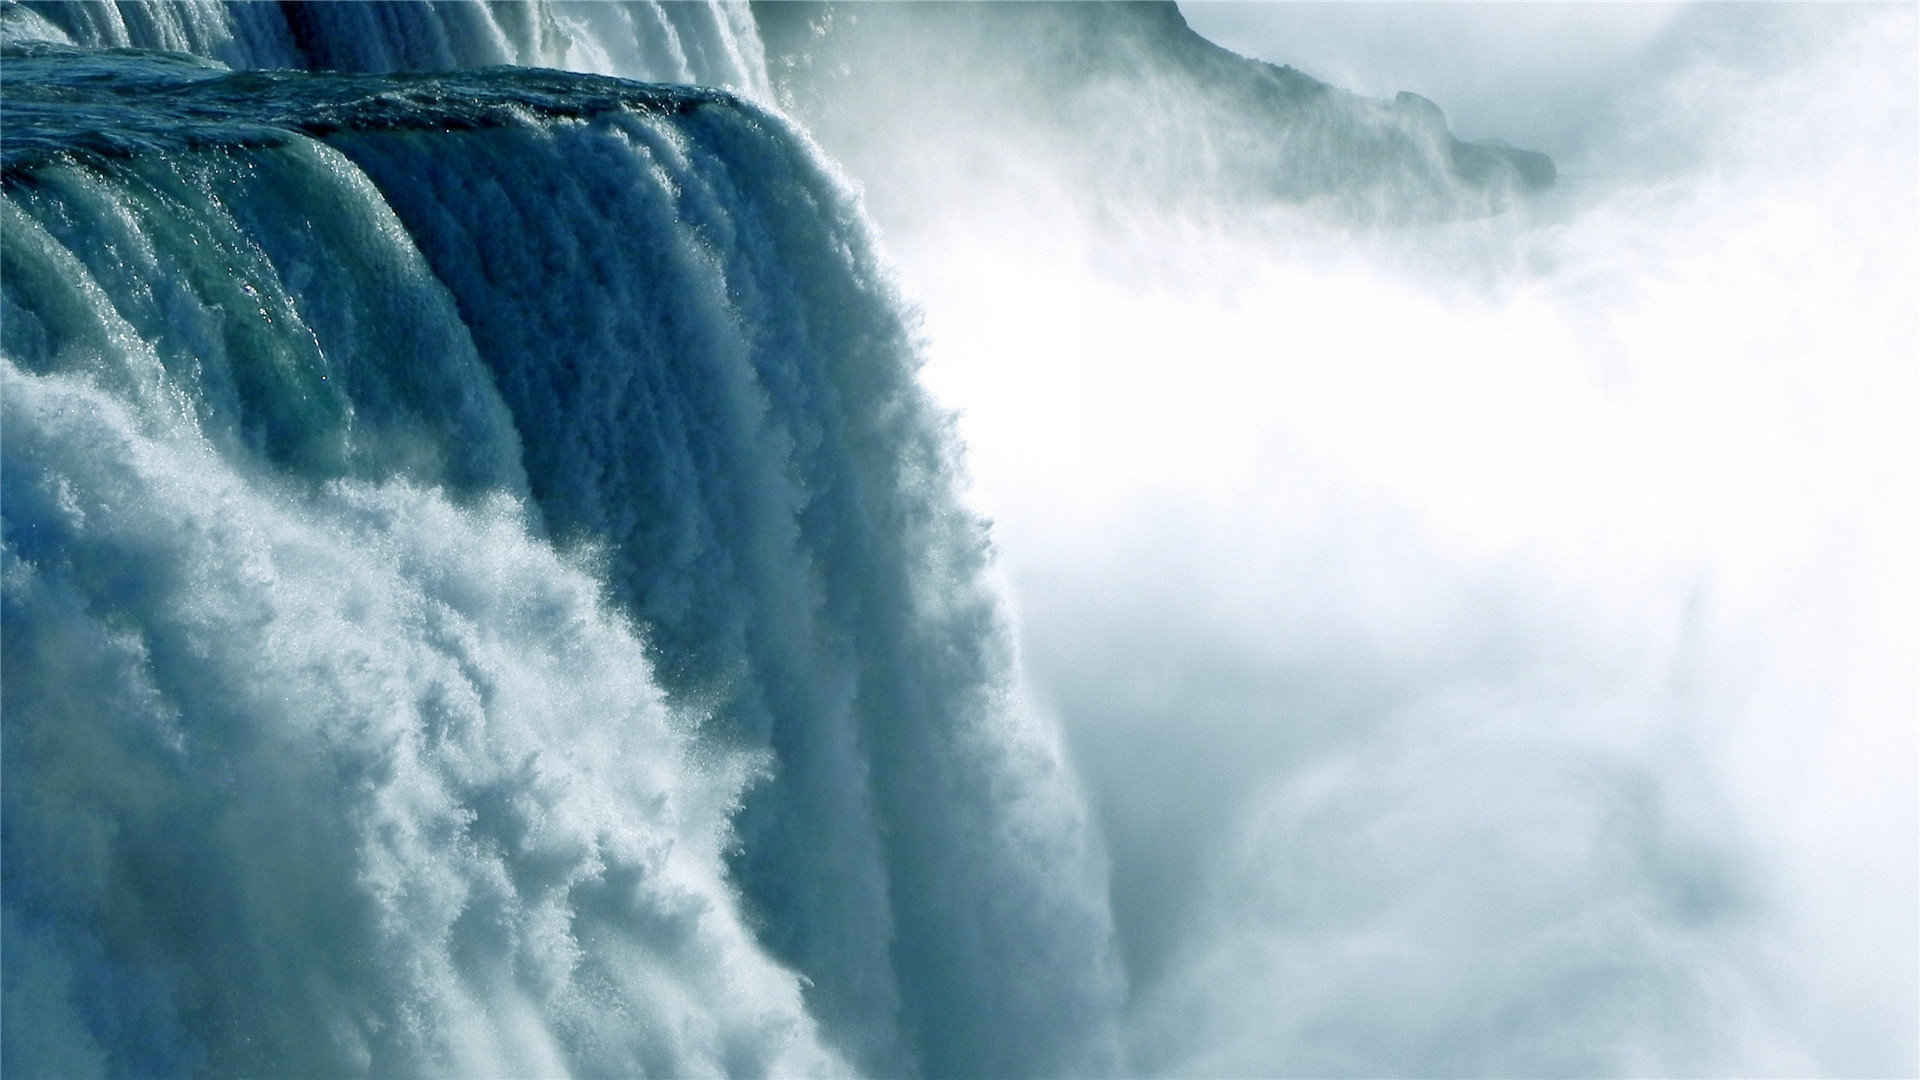 壮观漂亮的瀑布溪流山水风景壁纸图片大全高清-